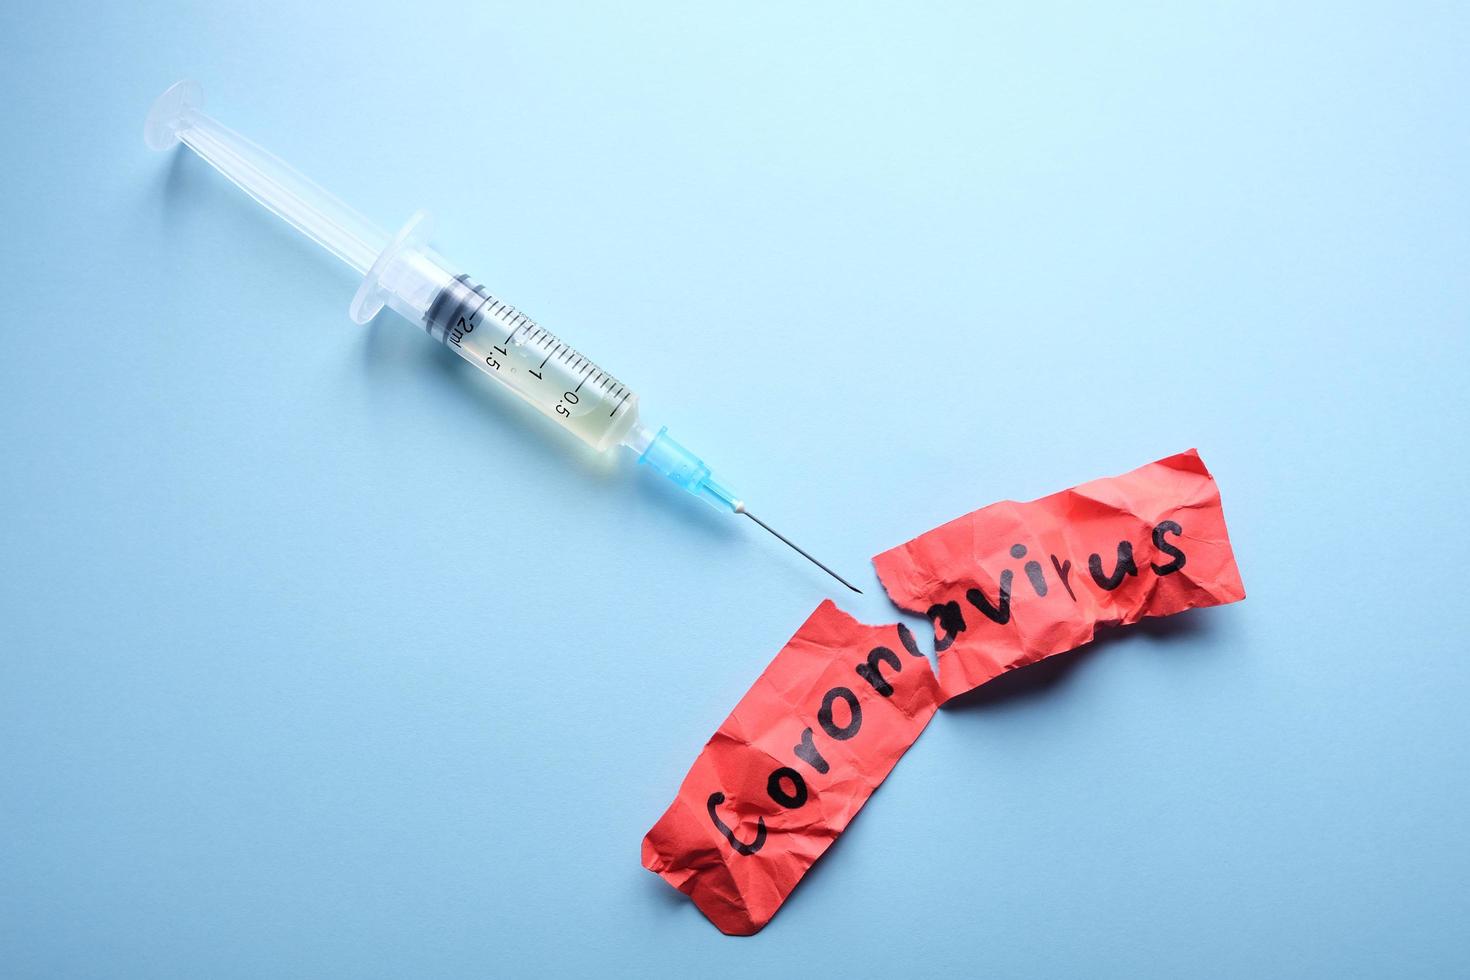 Close up image of a syringe photo